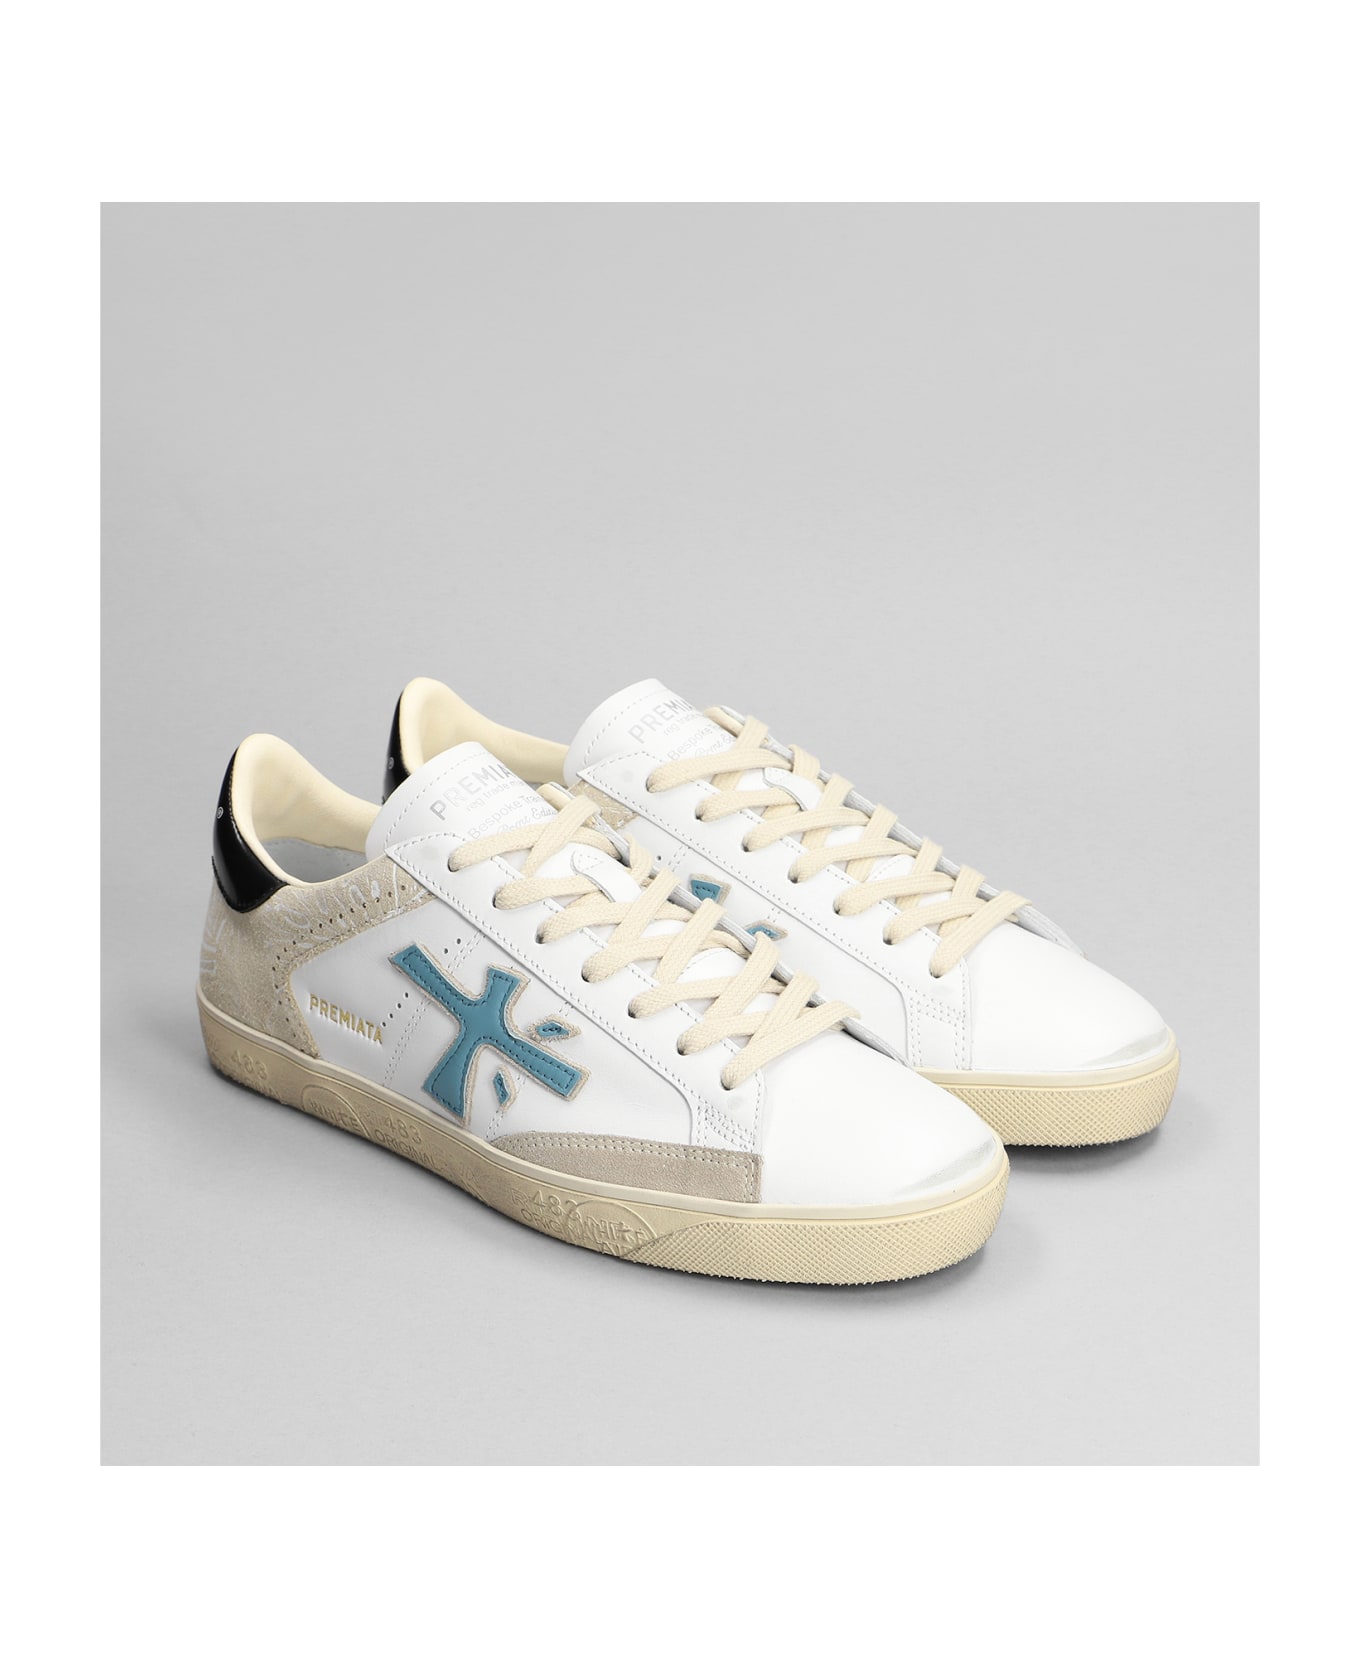 Premiata Steven Sneakers In White Leather - white